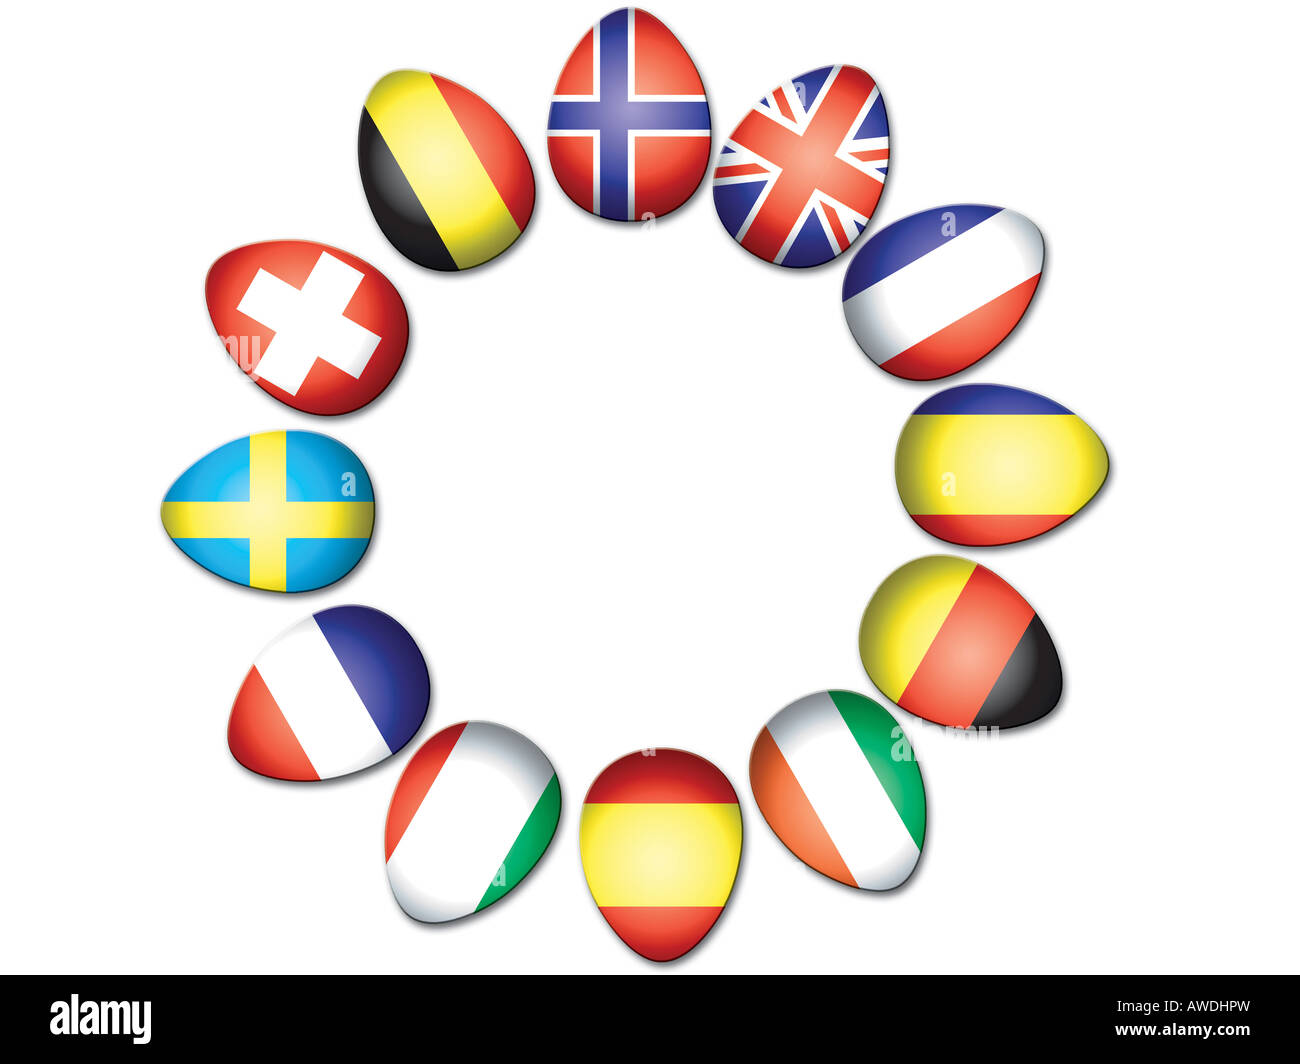 Cercle d'oeufs de Pâques représentant les drapeaux européens Banque D'Images